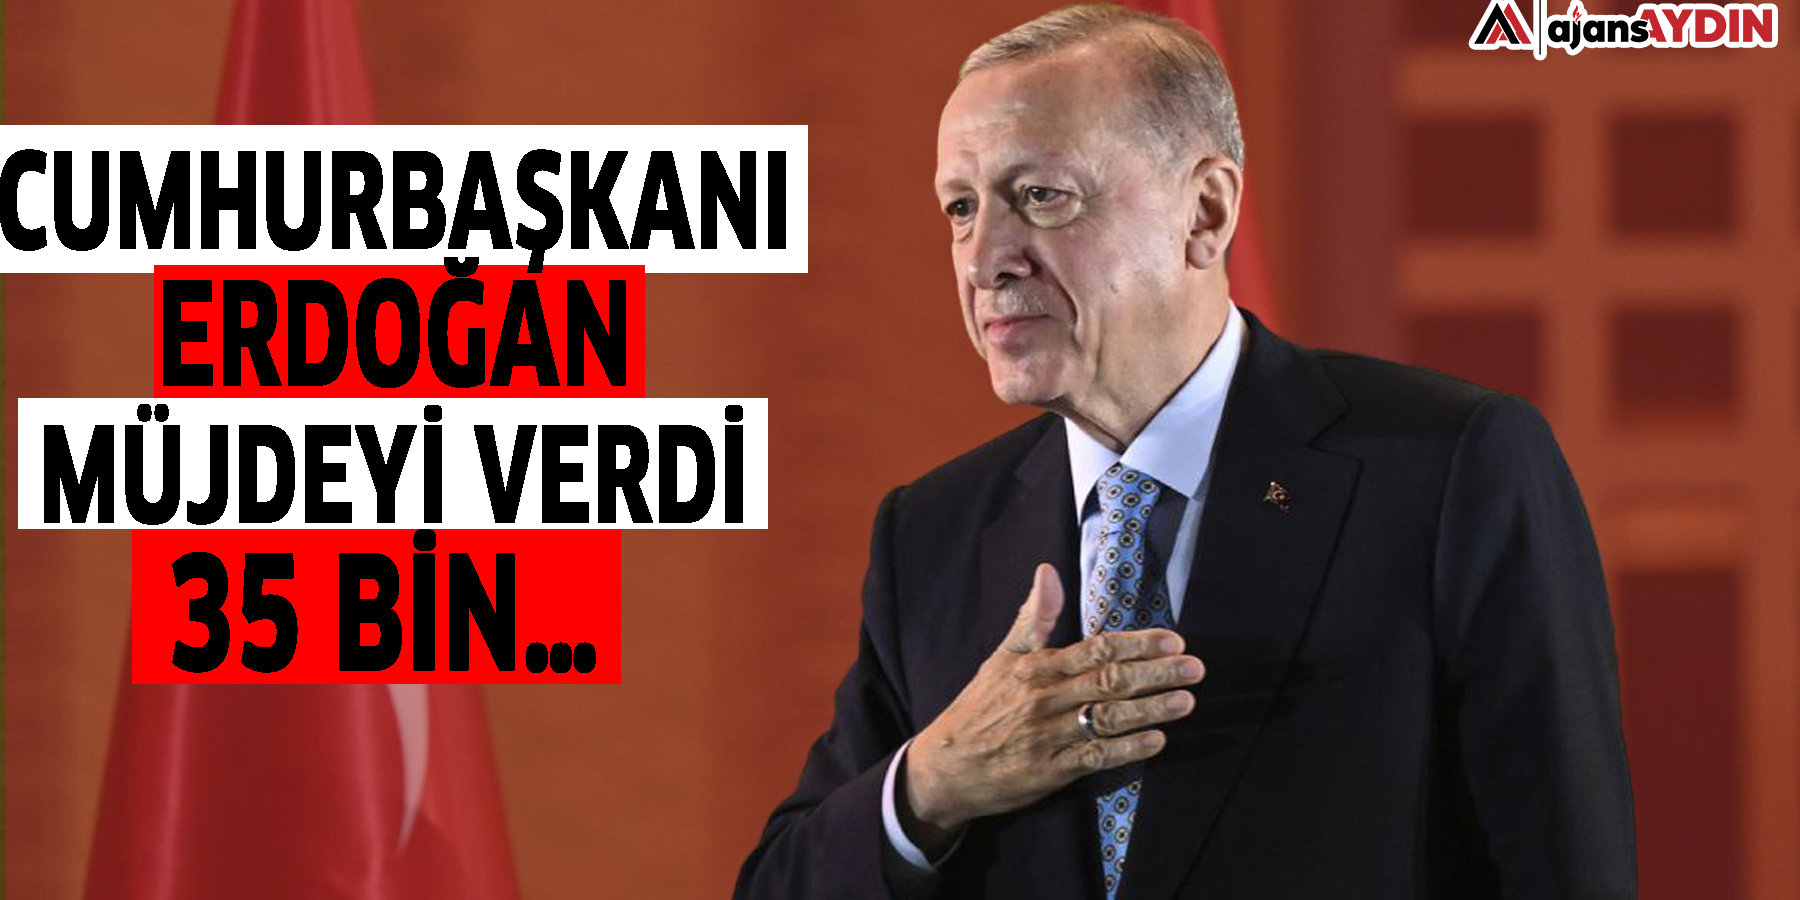 Cumhurbaşkanı Erdoğan müjdeyi verdi! '35 bin…